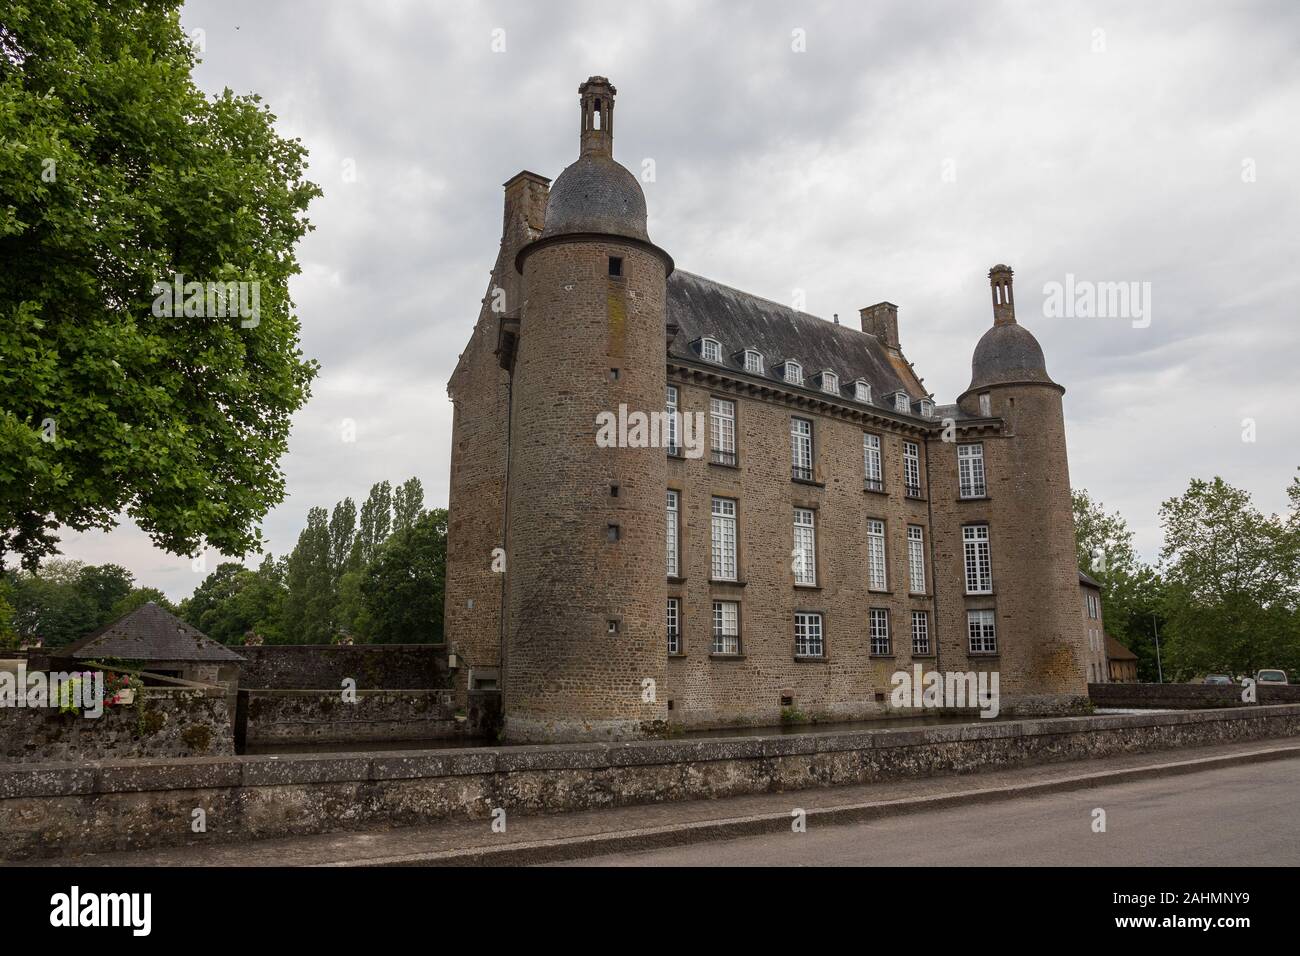 Das Schloss von Flers, heute ein Museum, Orne (Normandie, Frankreich). Wunderschöne mittelalterliche Architektur. Wide-angle shot Dieses historisches Denkmal. Dezember 2019 Stockfoto